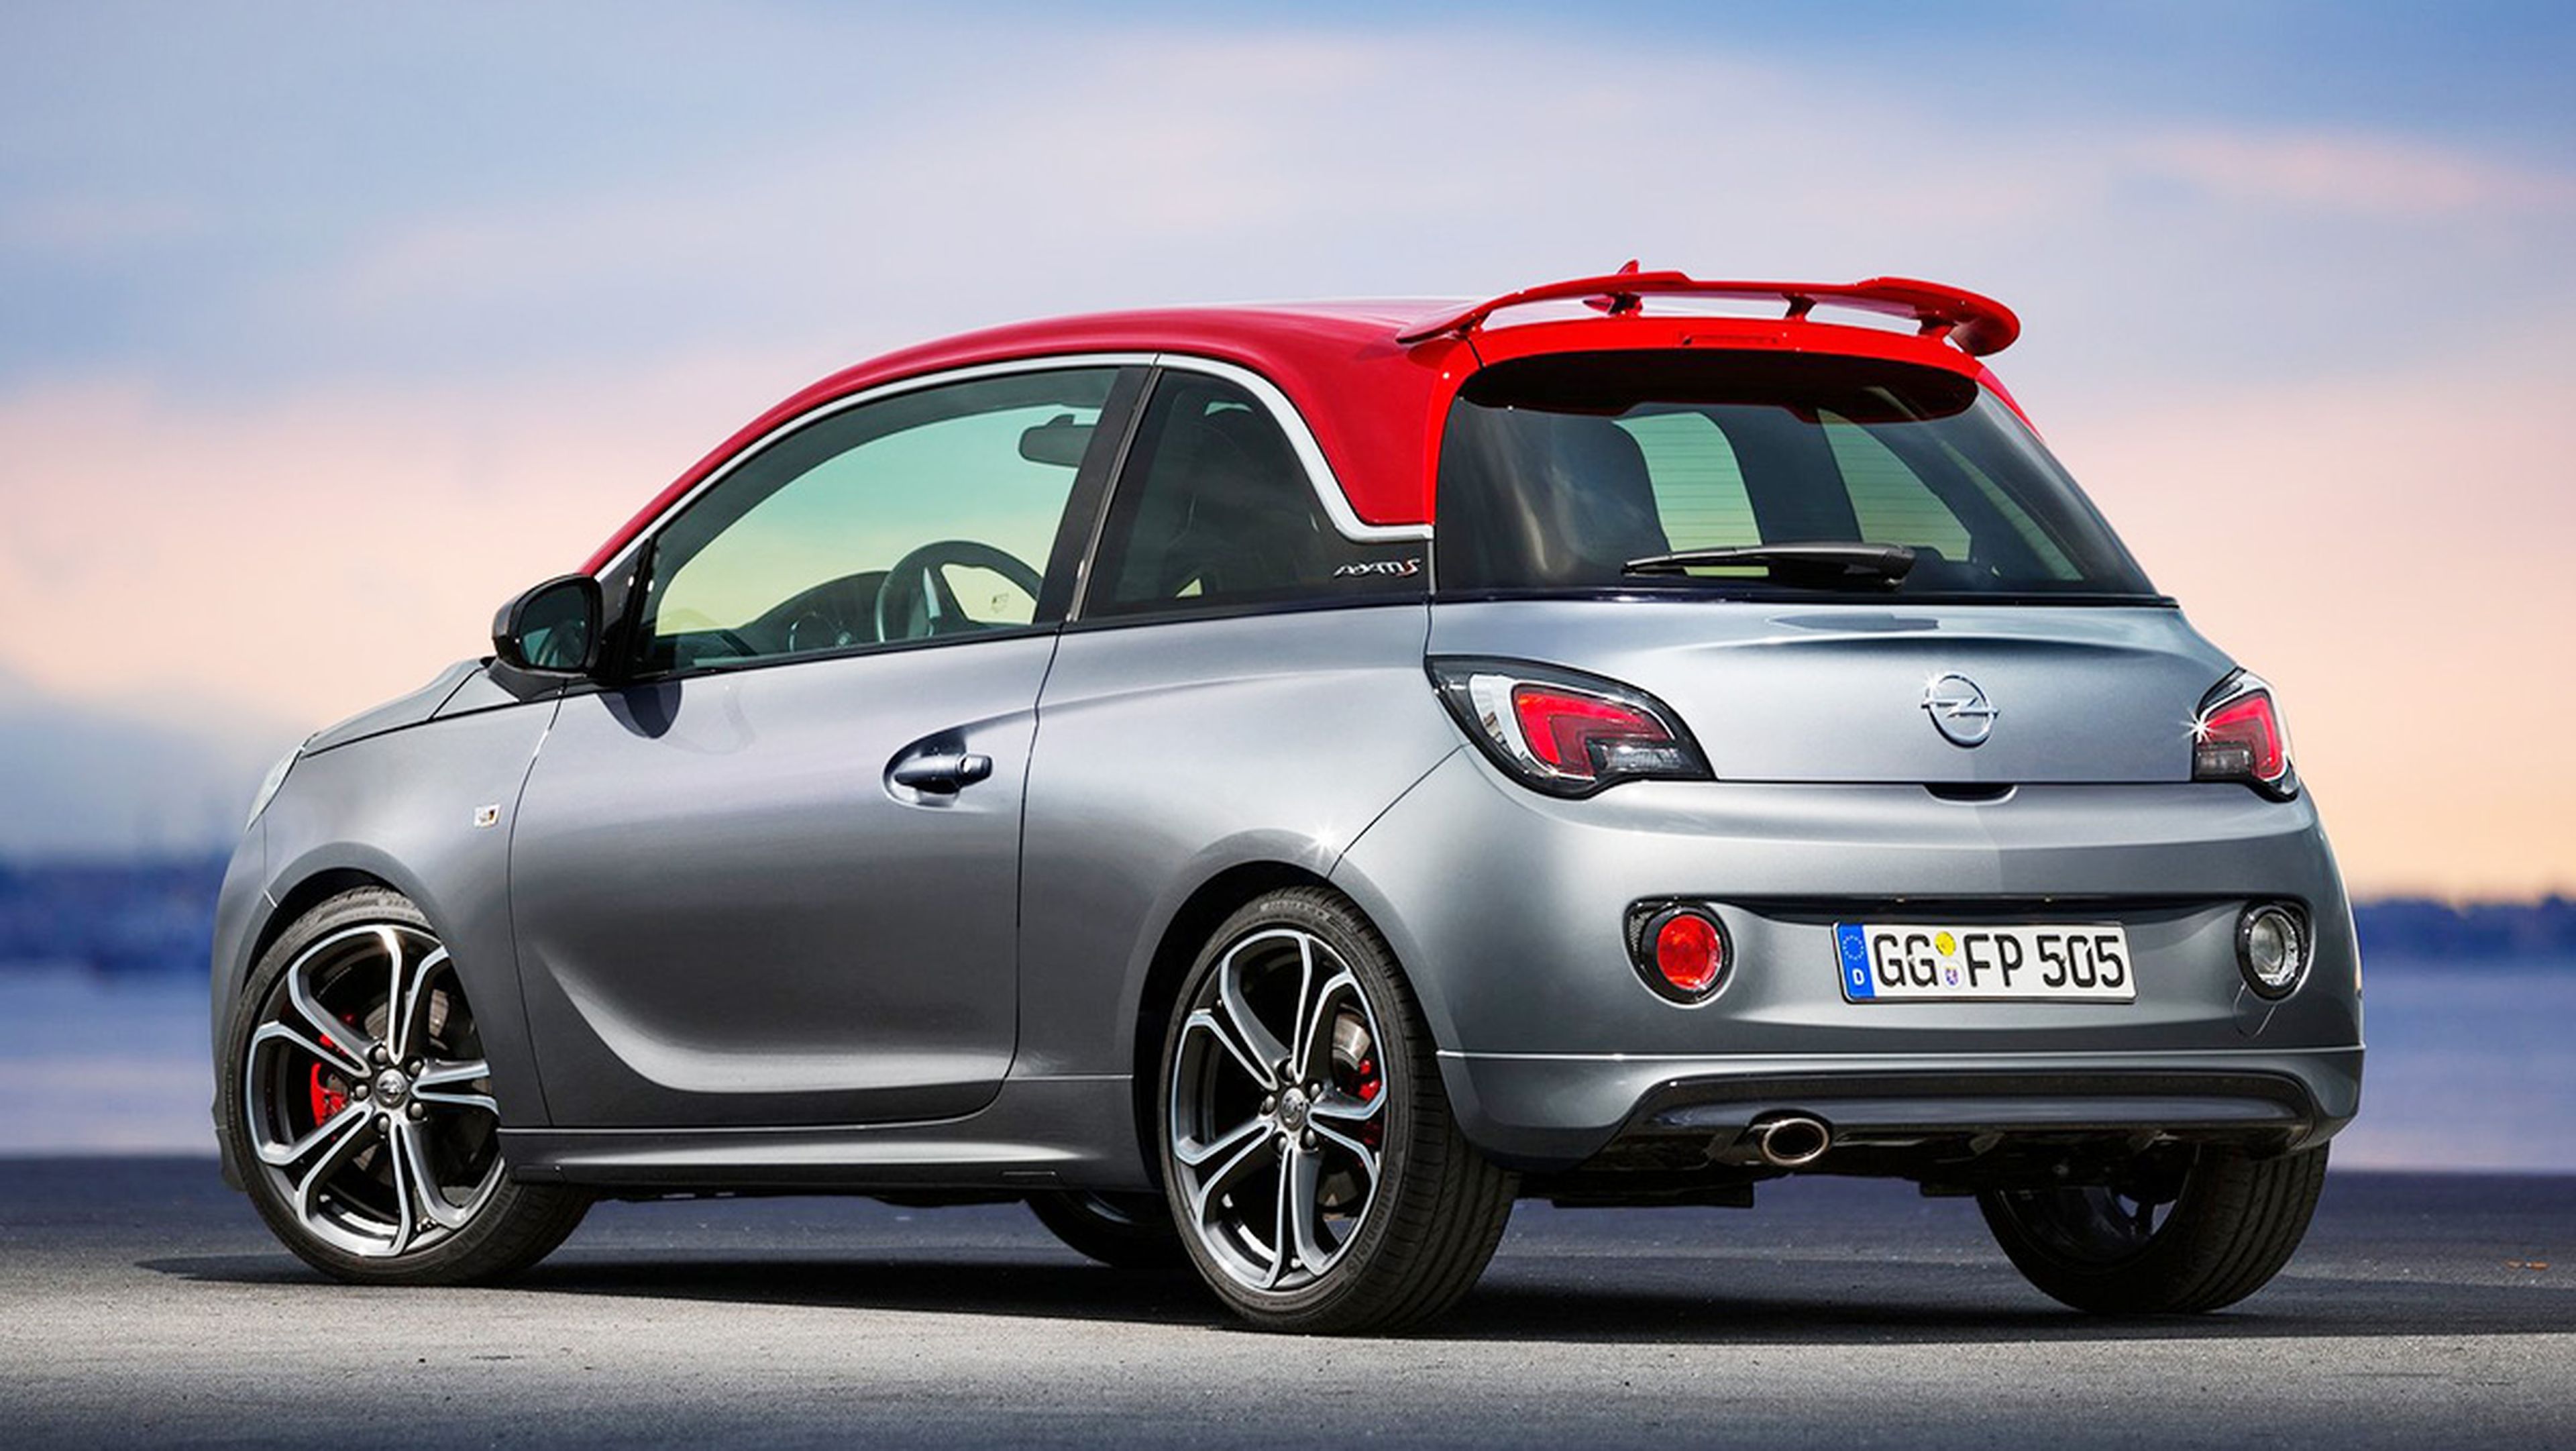 Coches nuevos entre 15.000 y 18.000 euros - Opel Adam S